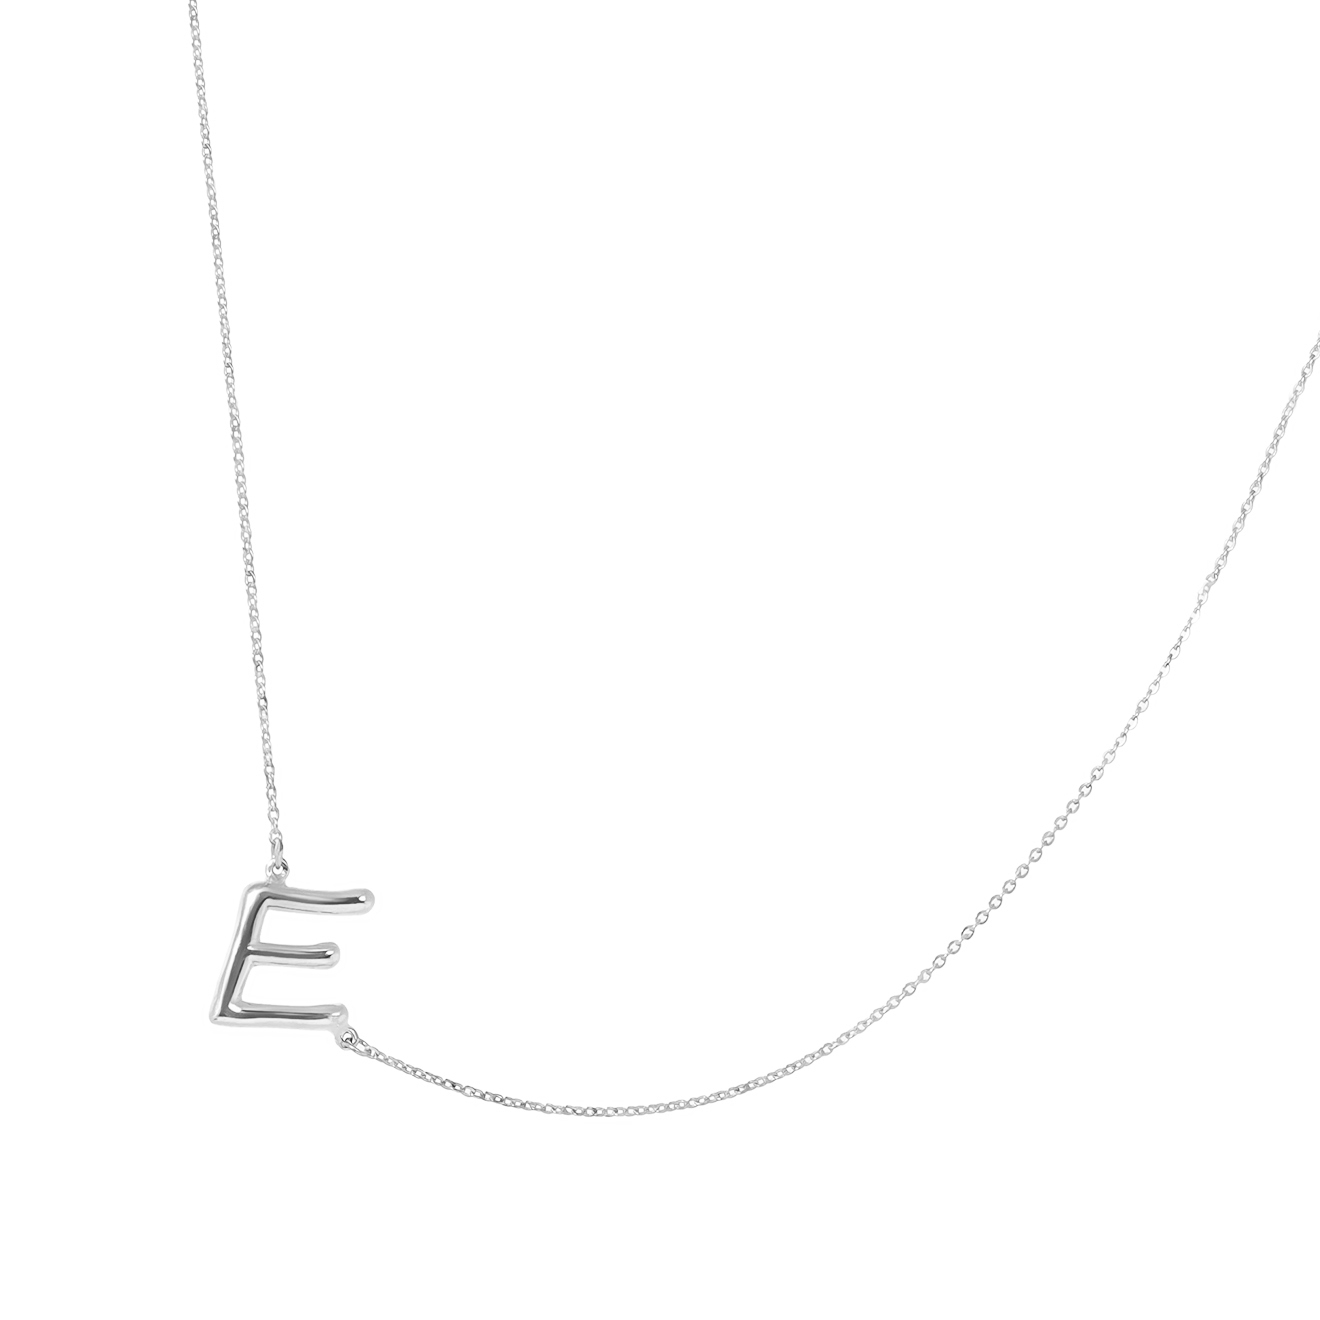 Tilda Серебряное колье с буквой E визитница 5 серебро 925